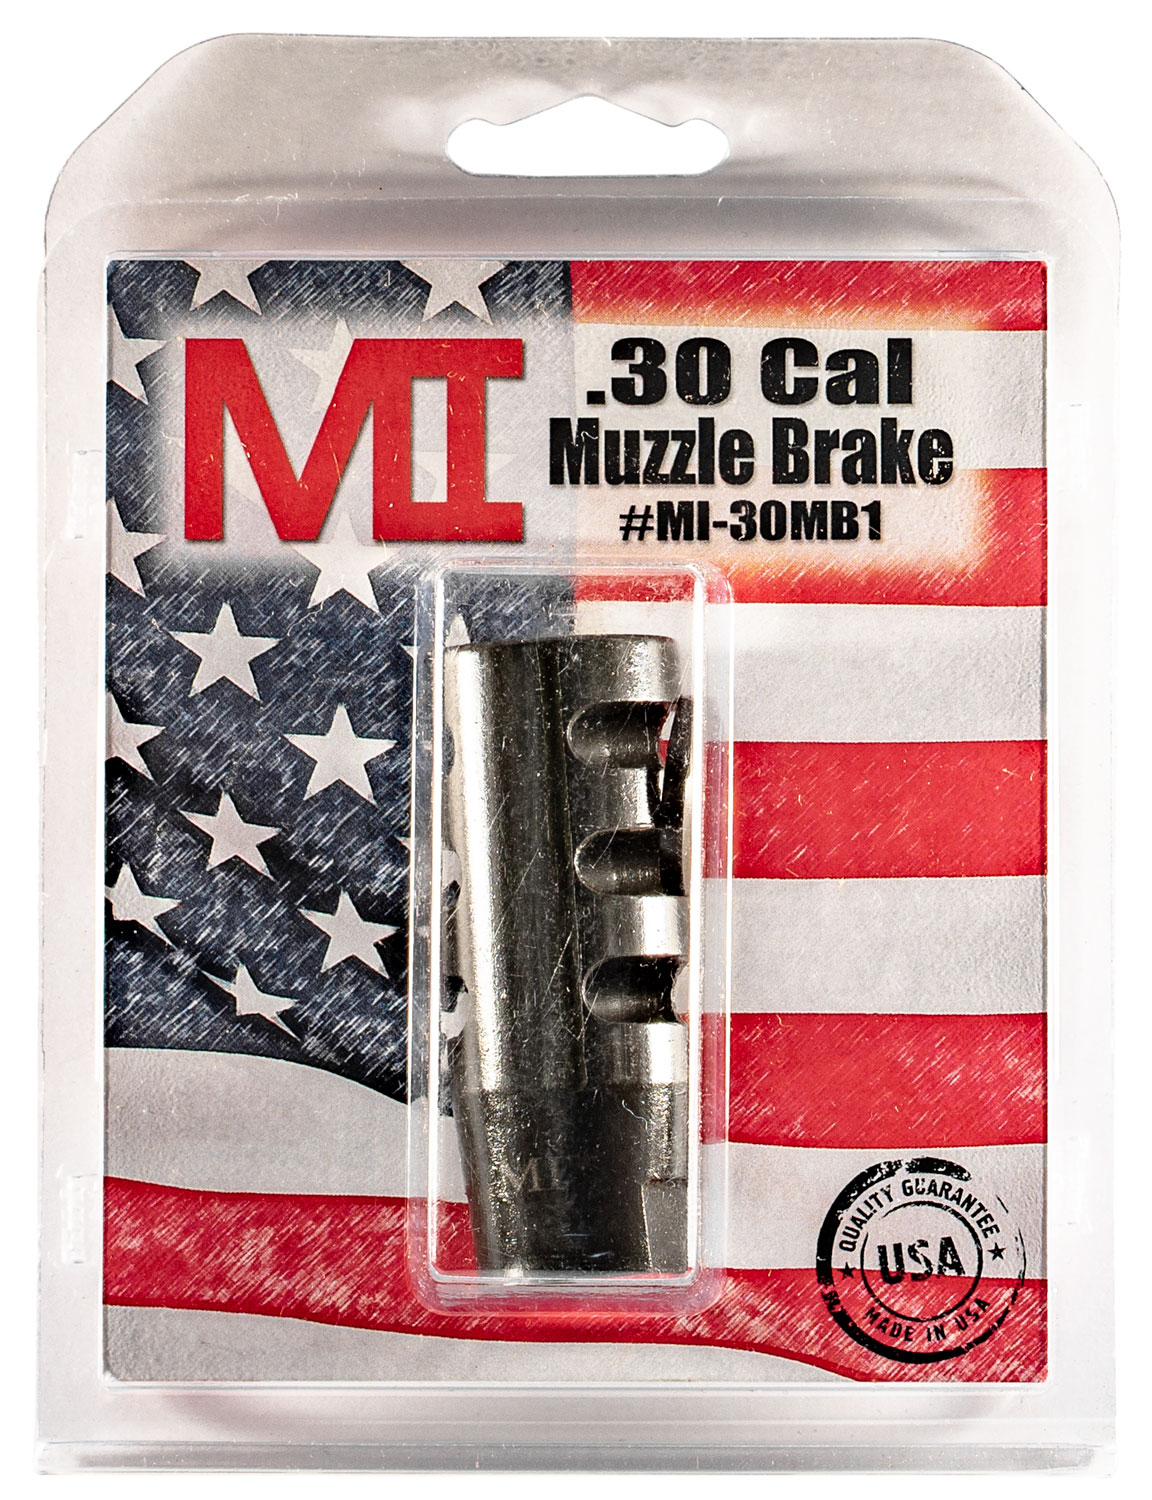 Midwest Industries MIAR30MB1 Muzzle Brake  Black Phosphate Steel with 5/8